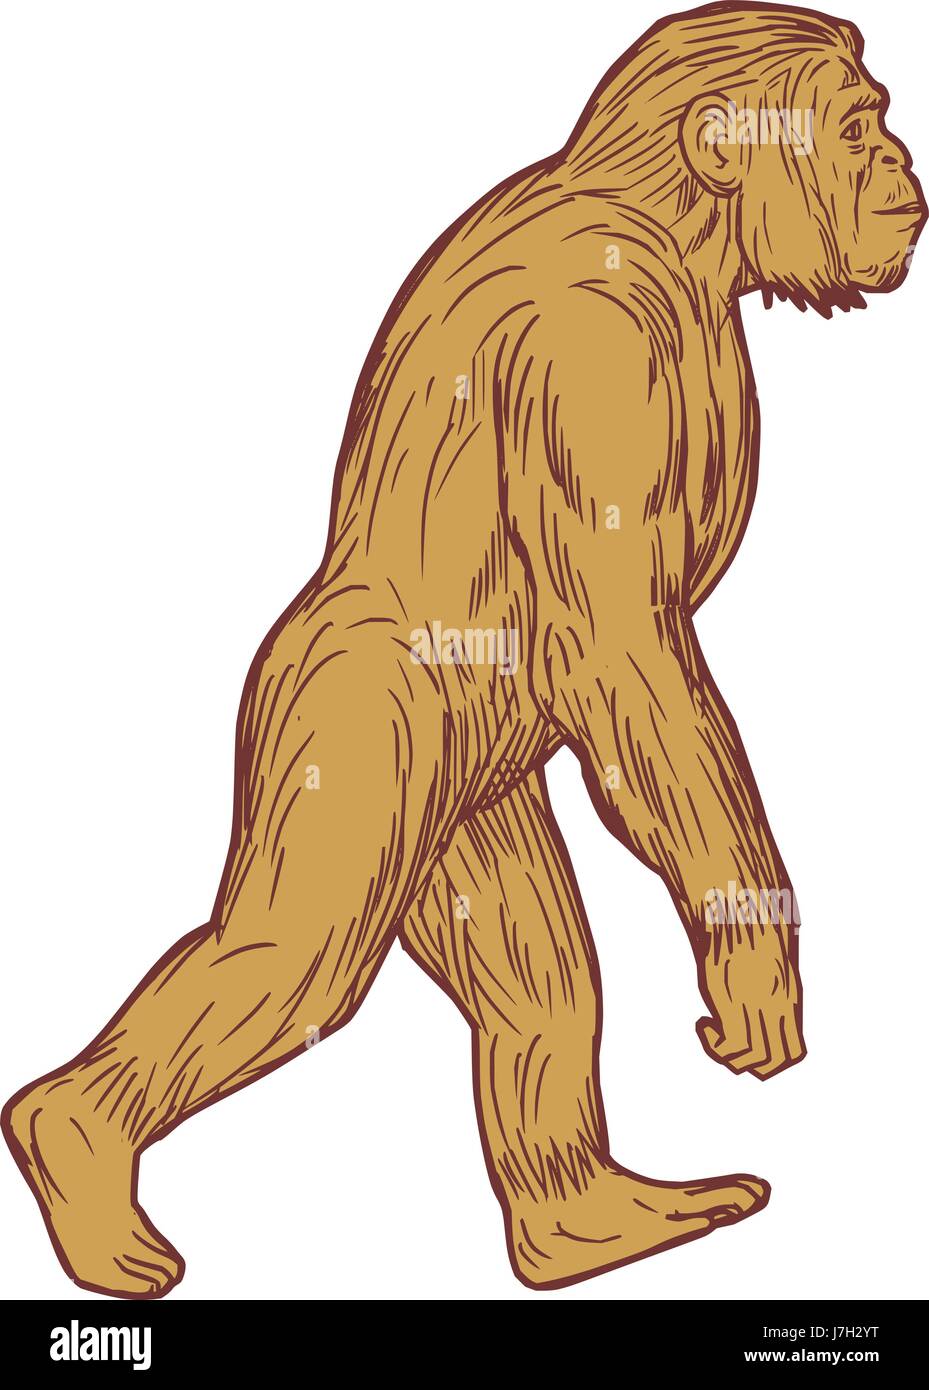 Schizzo di disegno illustrazione dello stile di Homo habilis, una specie di tribù Hominini, durante la Gelasian e primi stadi calabrese del Pleistocene superiore Illustrazione Vettoriale